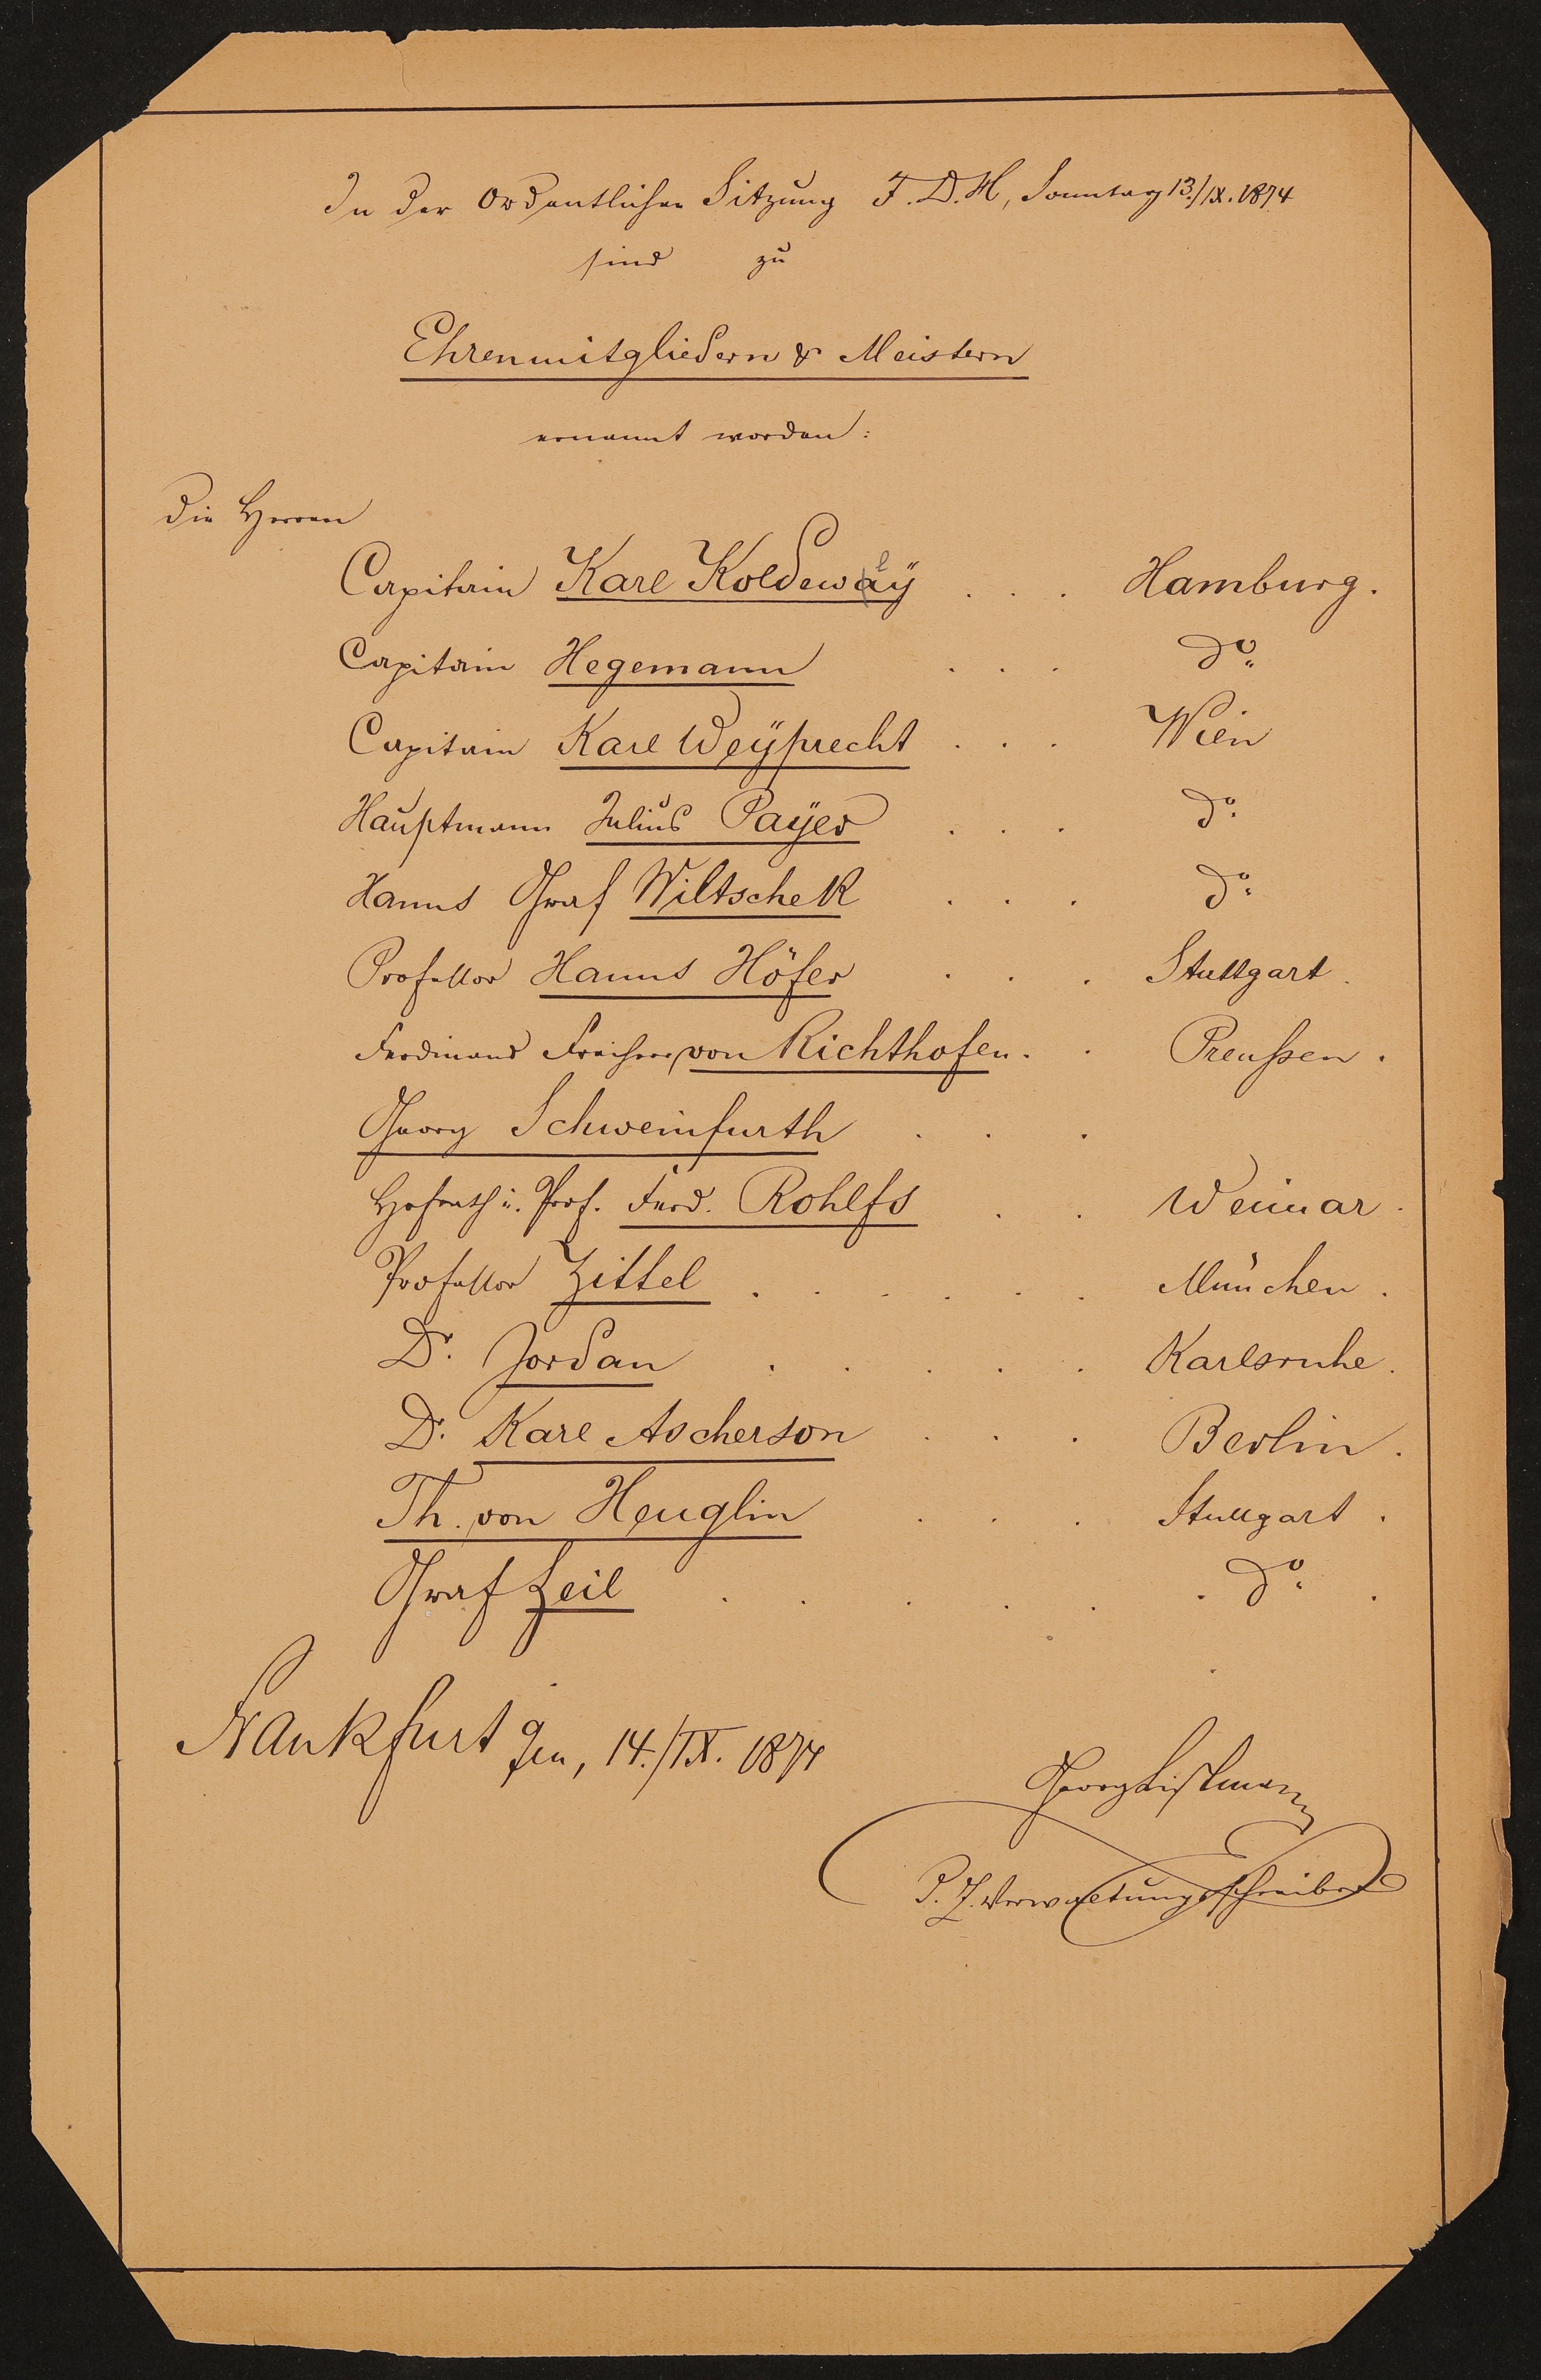 Liste "In der Ordentlichen Sitzung F.D.H, Sonntag 13.09.1874 sind zu Ehrenmitgliedern & Meistern ernannt worden" (Freies Deutsches Hochstift / Frankfurter Goethe-Museum Public Domain Mark)